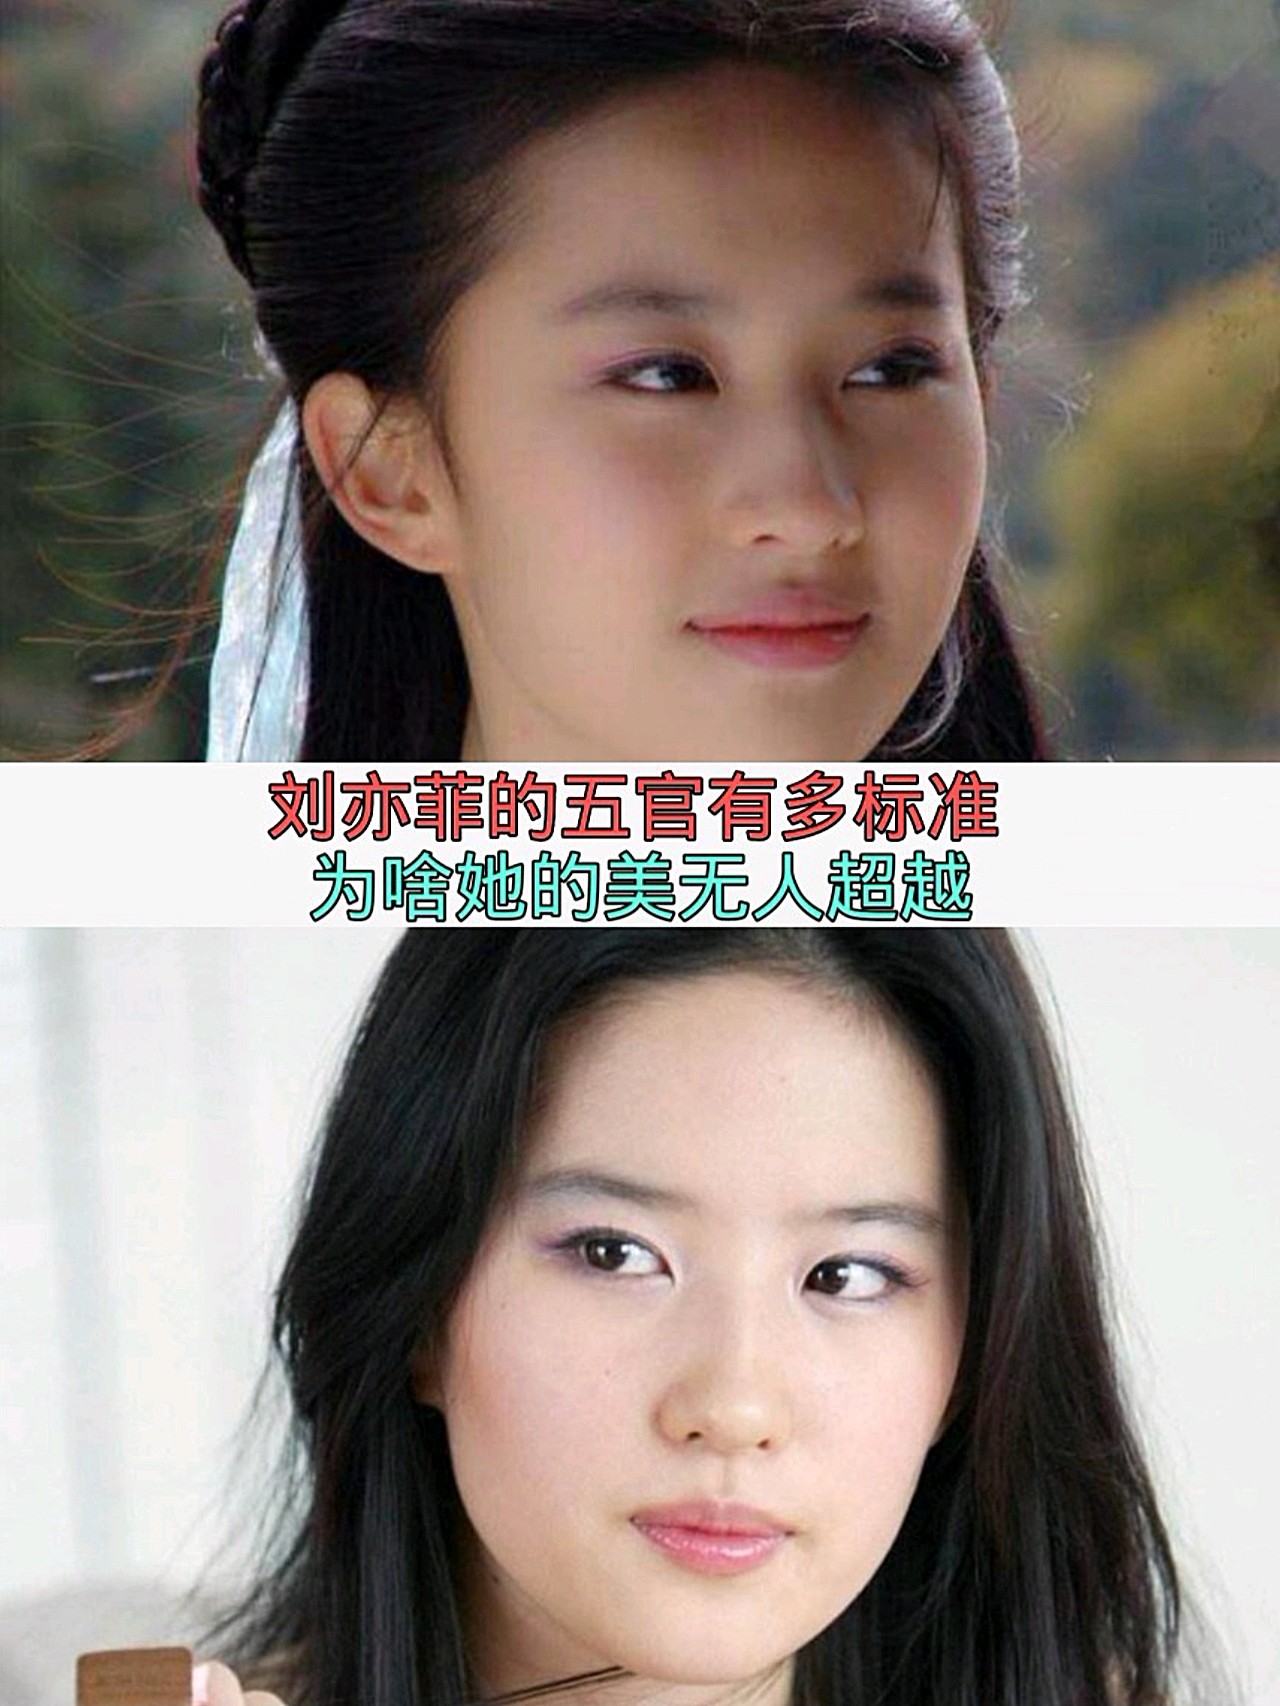 标准的美女刘亦菲的五官分析,为啥她的模样很难难模仿,她的容貌能被称